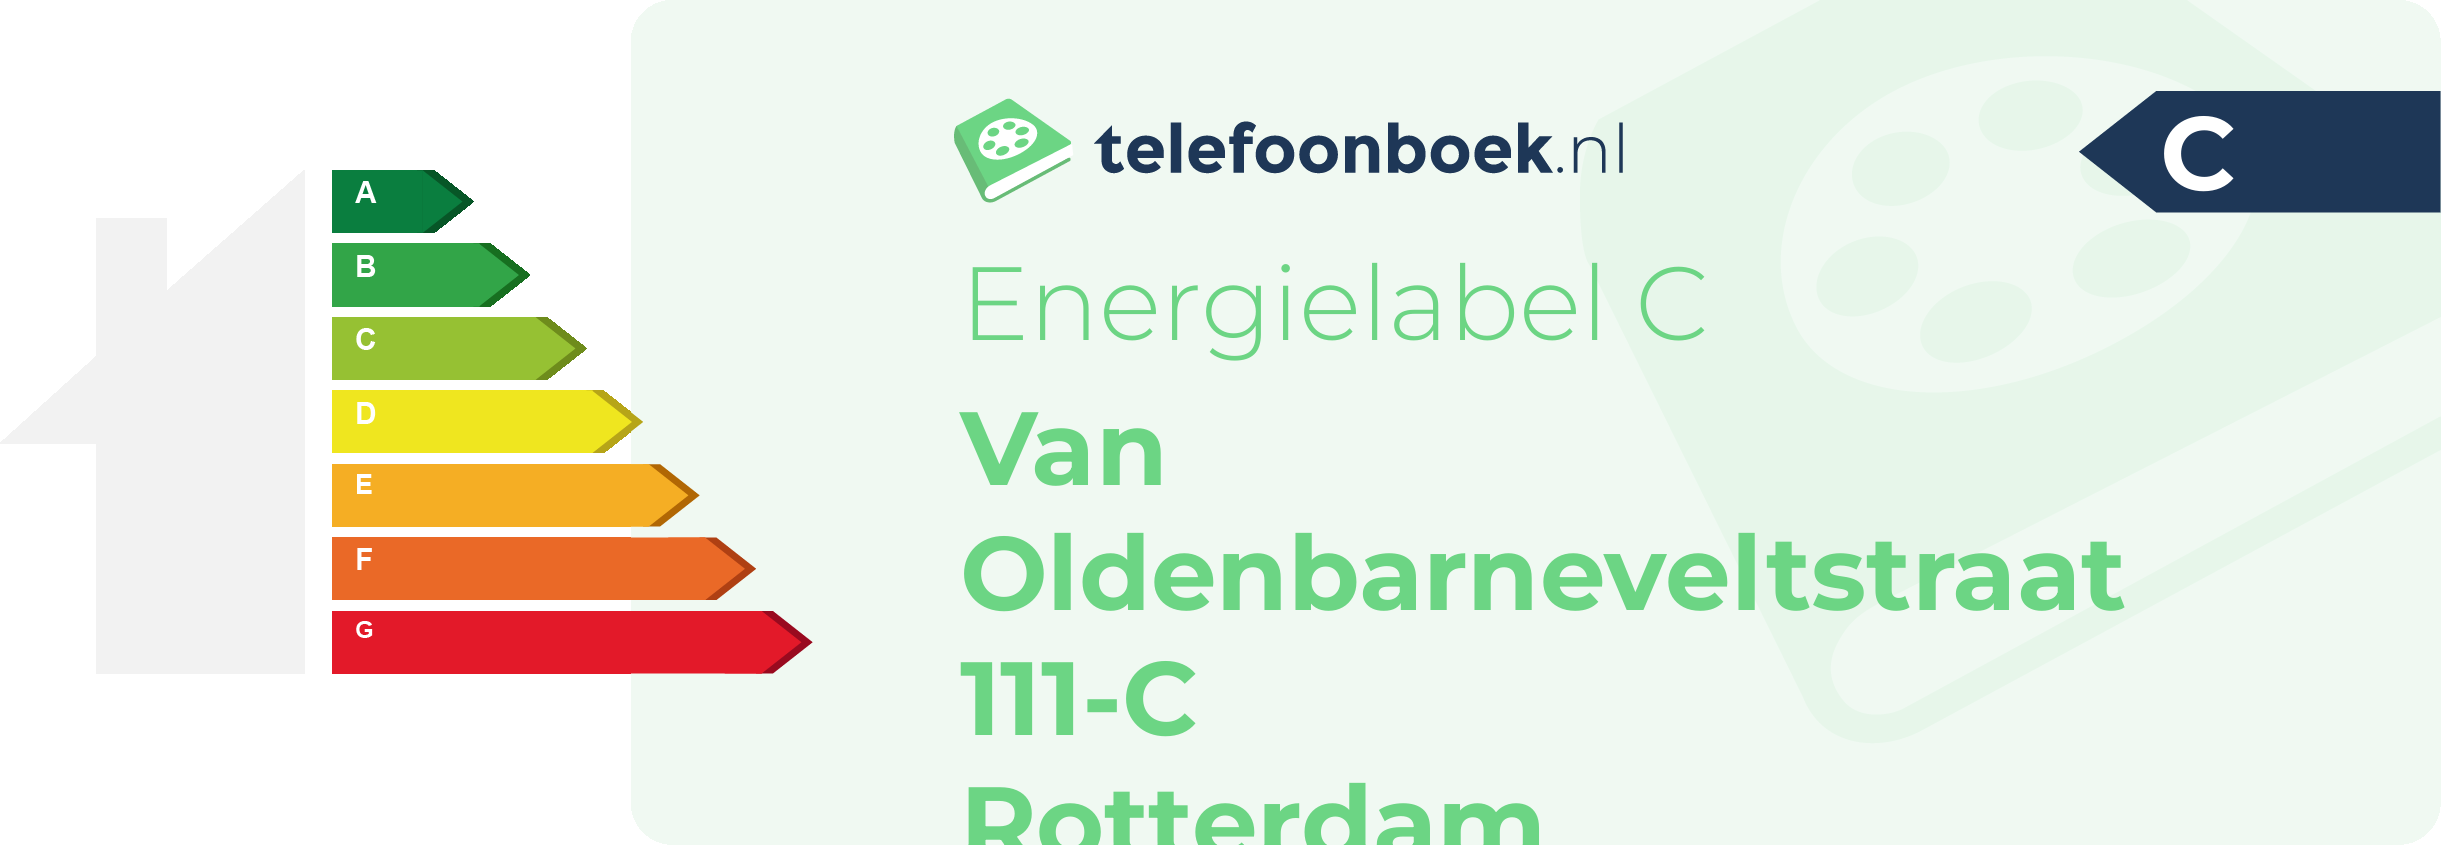 Energielabel Van Oldenbarneveltstraat 111-C Rotterdam